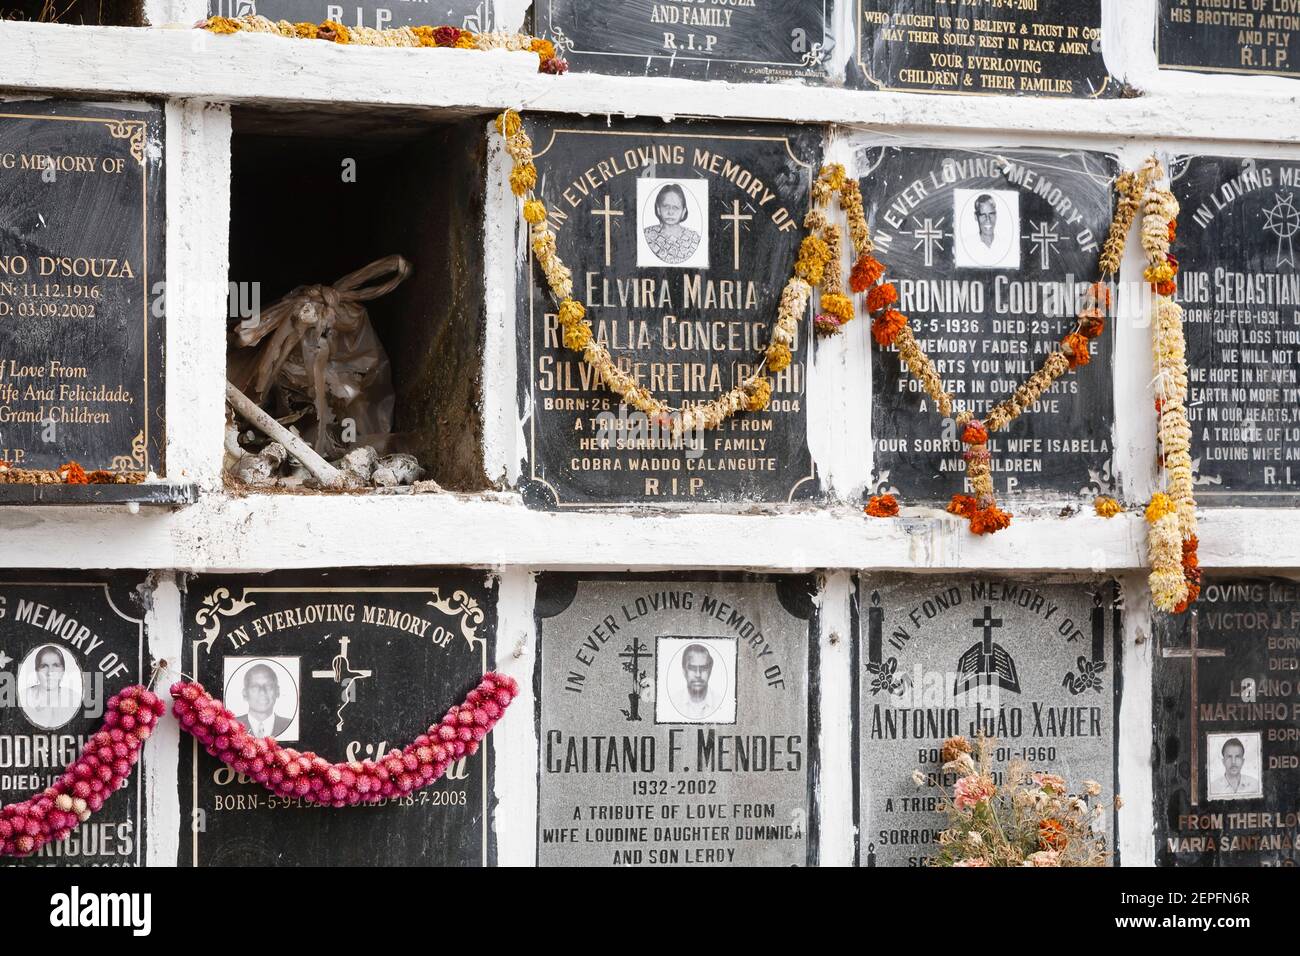 PANAJI, INDE - 07 novembre 2011. Mur de columbarium dans un cimetière, niches de cimetière dans un cimetière à Goa, Inde. Une niche ouverte avec le reste humain Banque D'Images